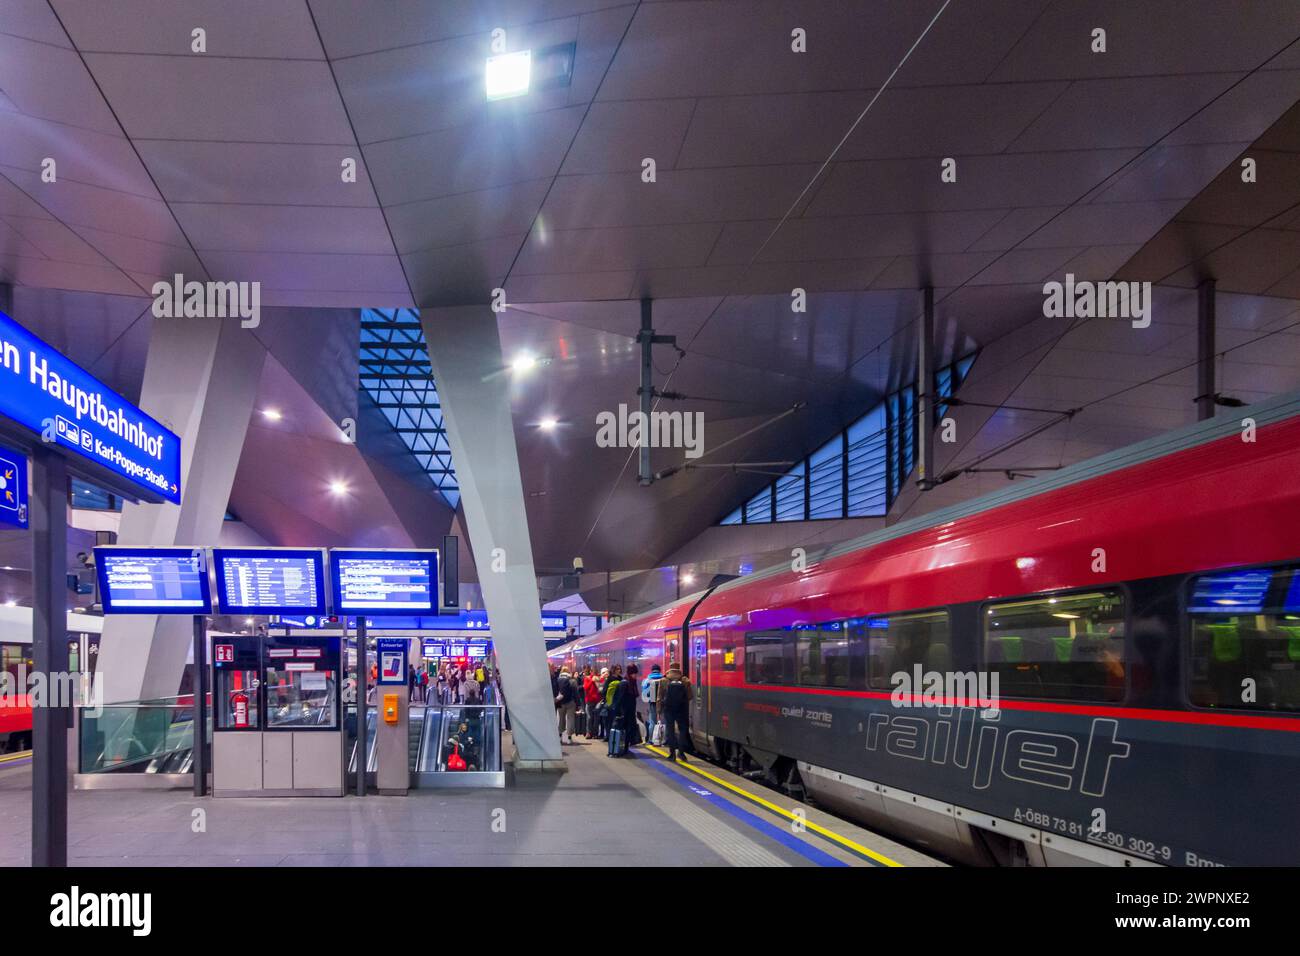 Vienne, train Railjet de ÖBB, gare Wien Hauptbahnhof en 10. Favoriten, Wien, Autriche Banque D'Images